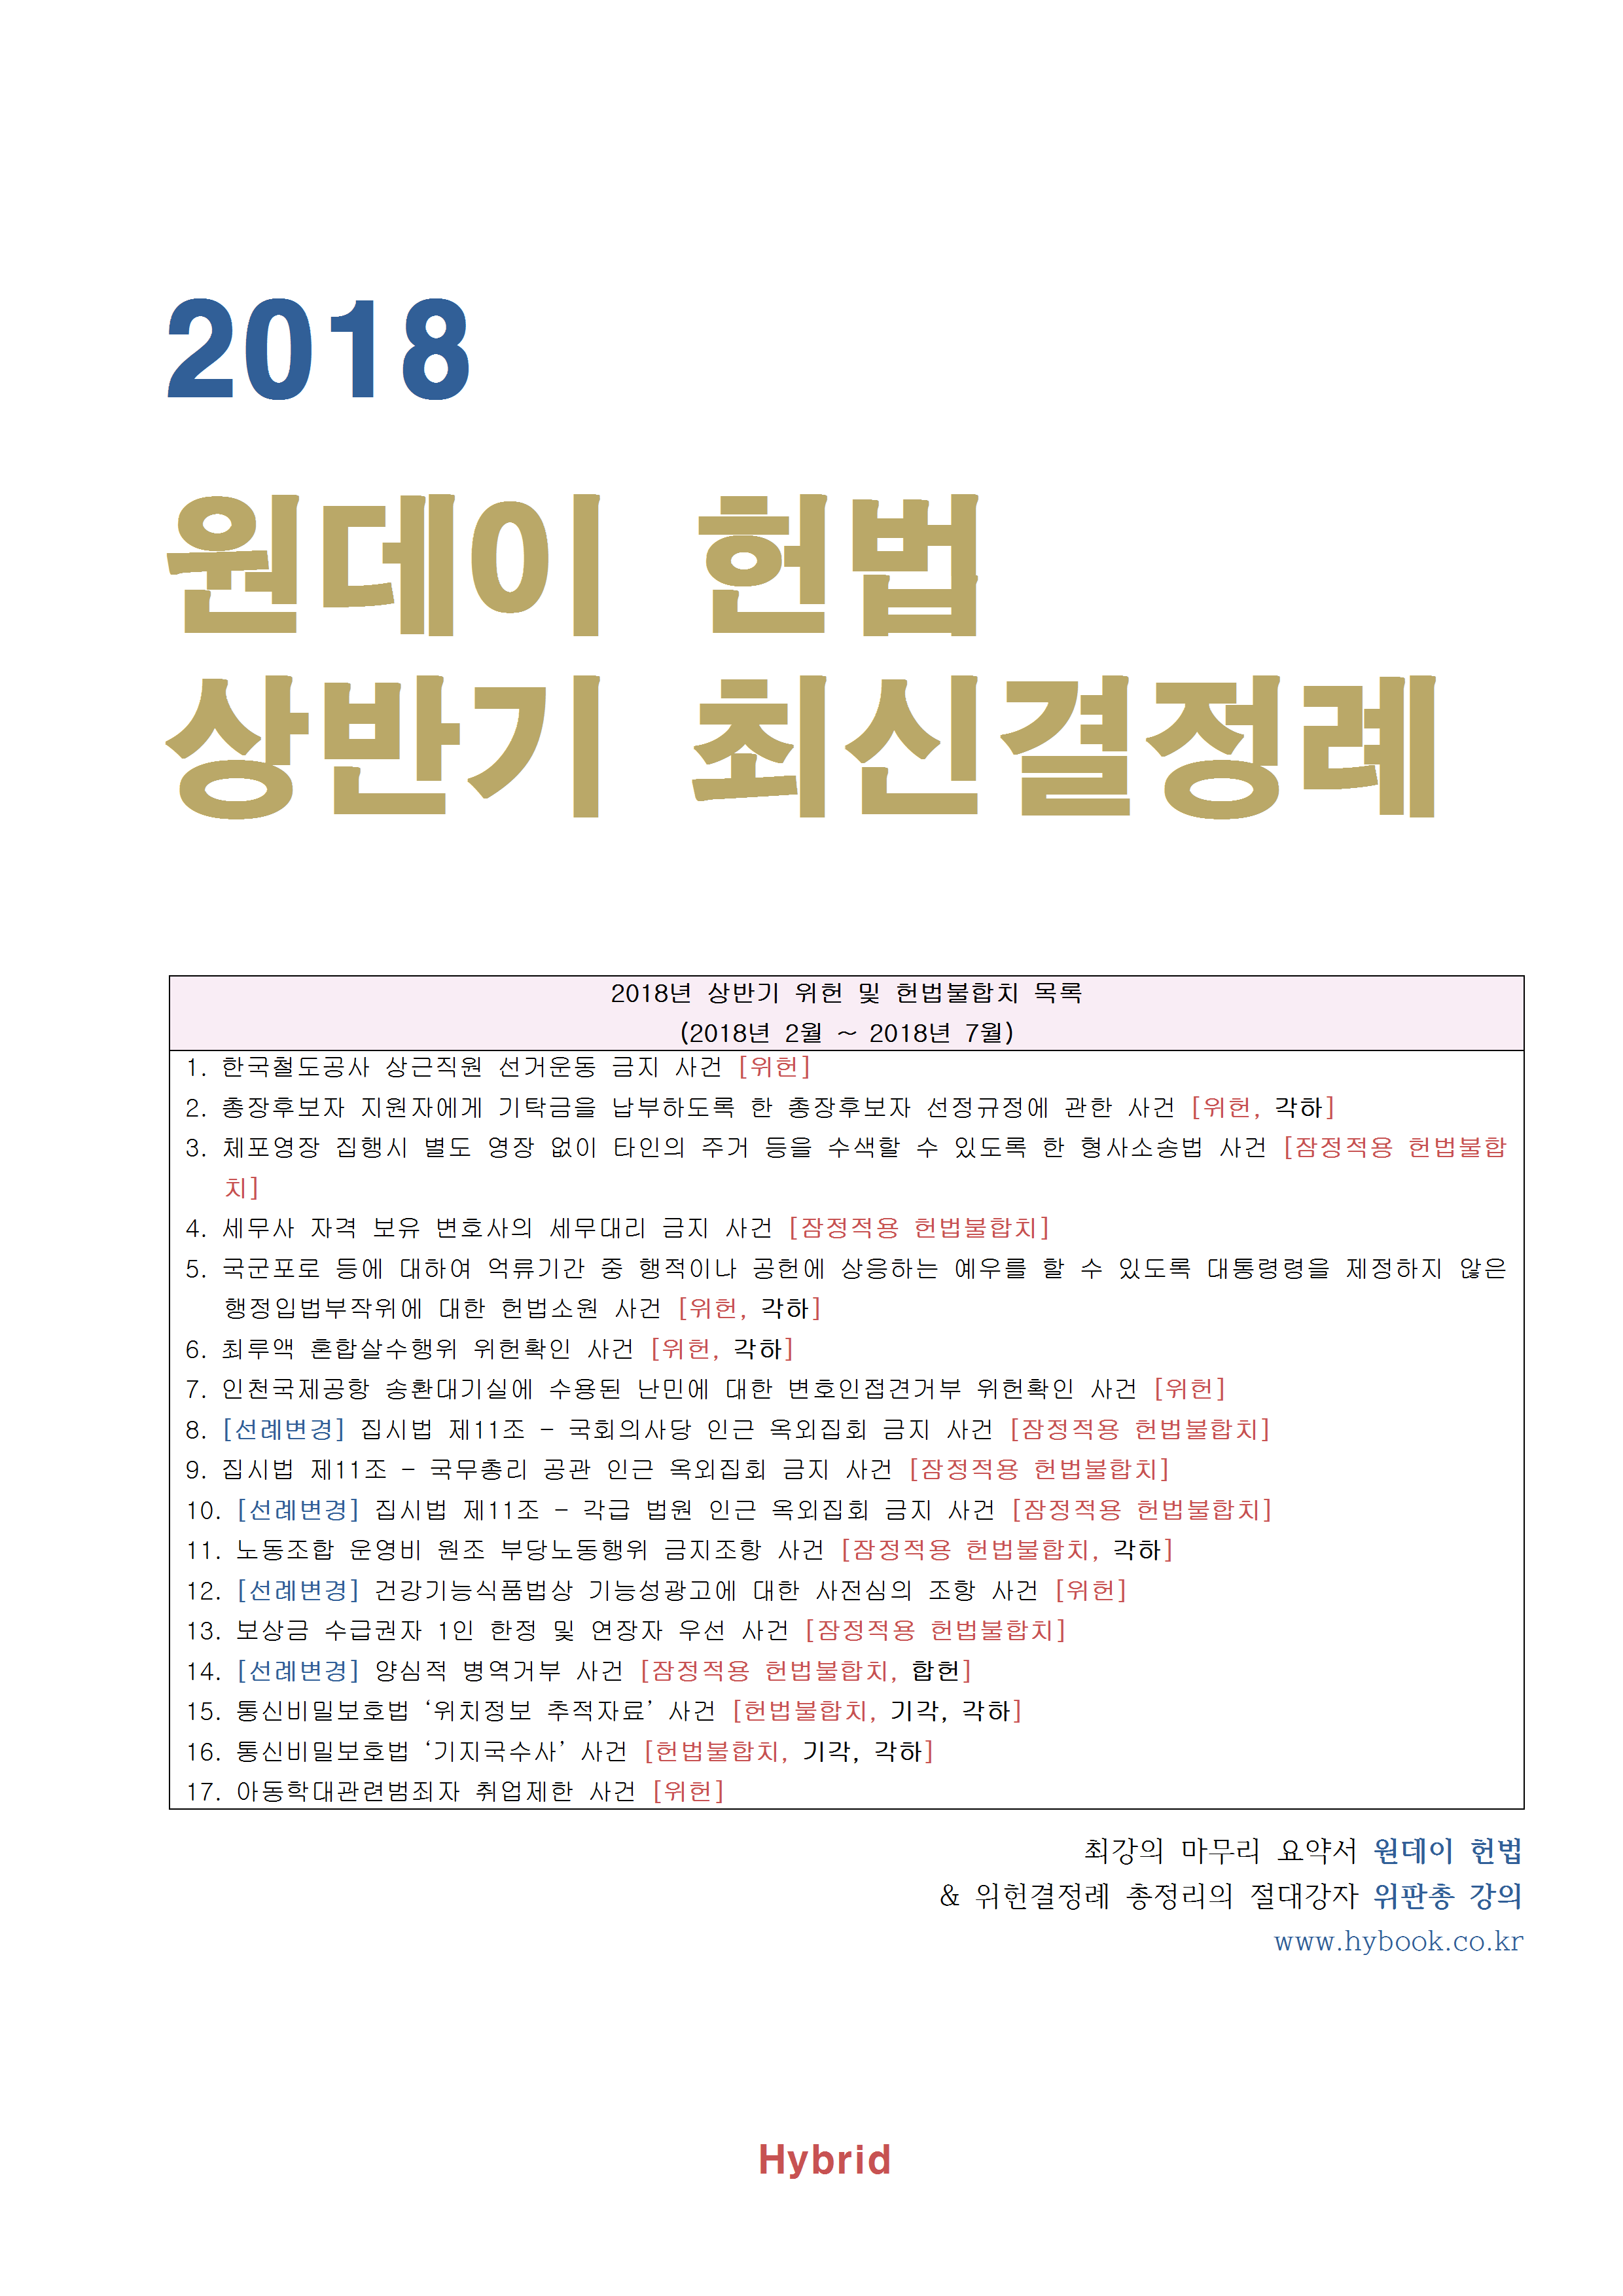 2018년 상반기 헌법재판소 최신판례 - 원데이헌법(49p)001.png